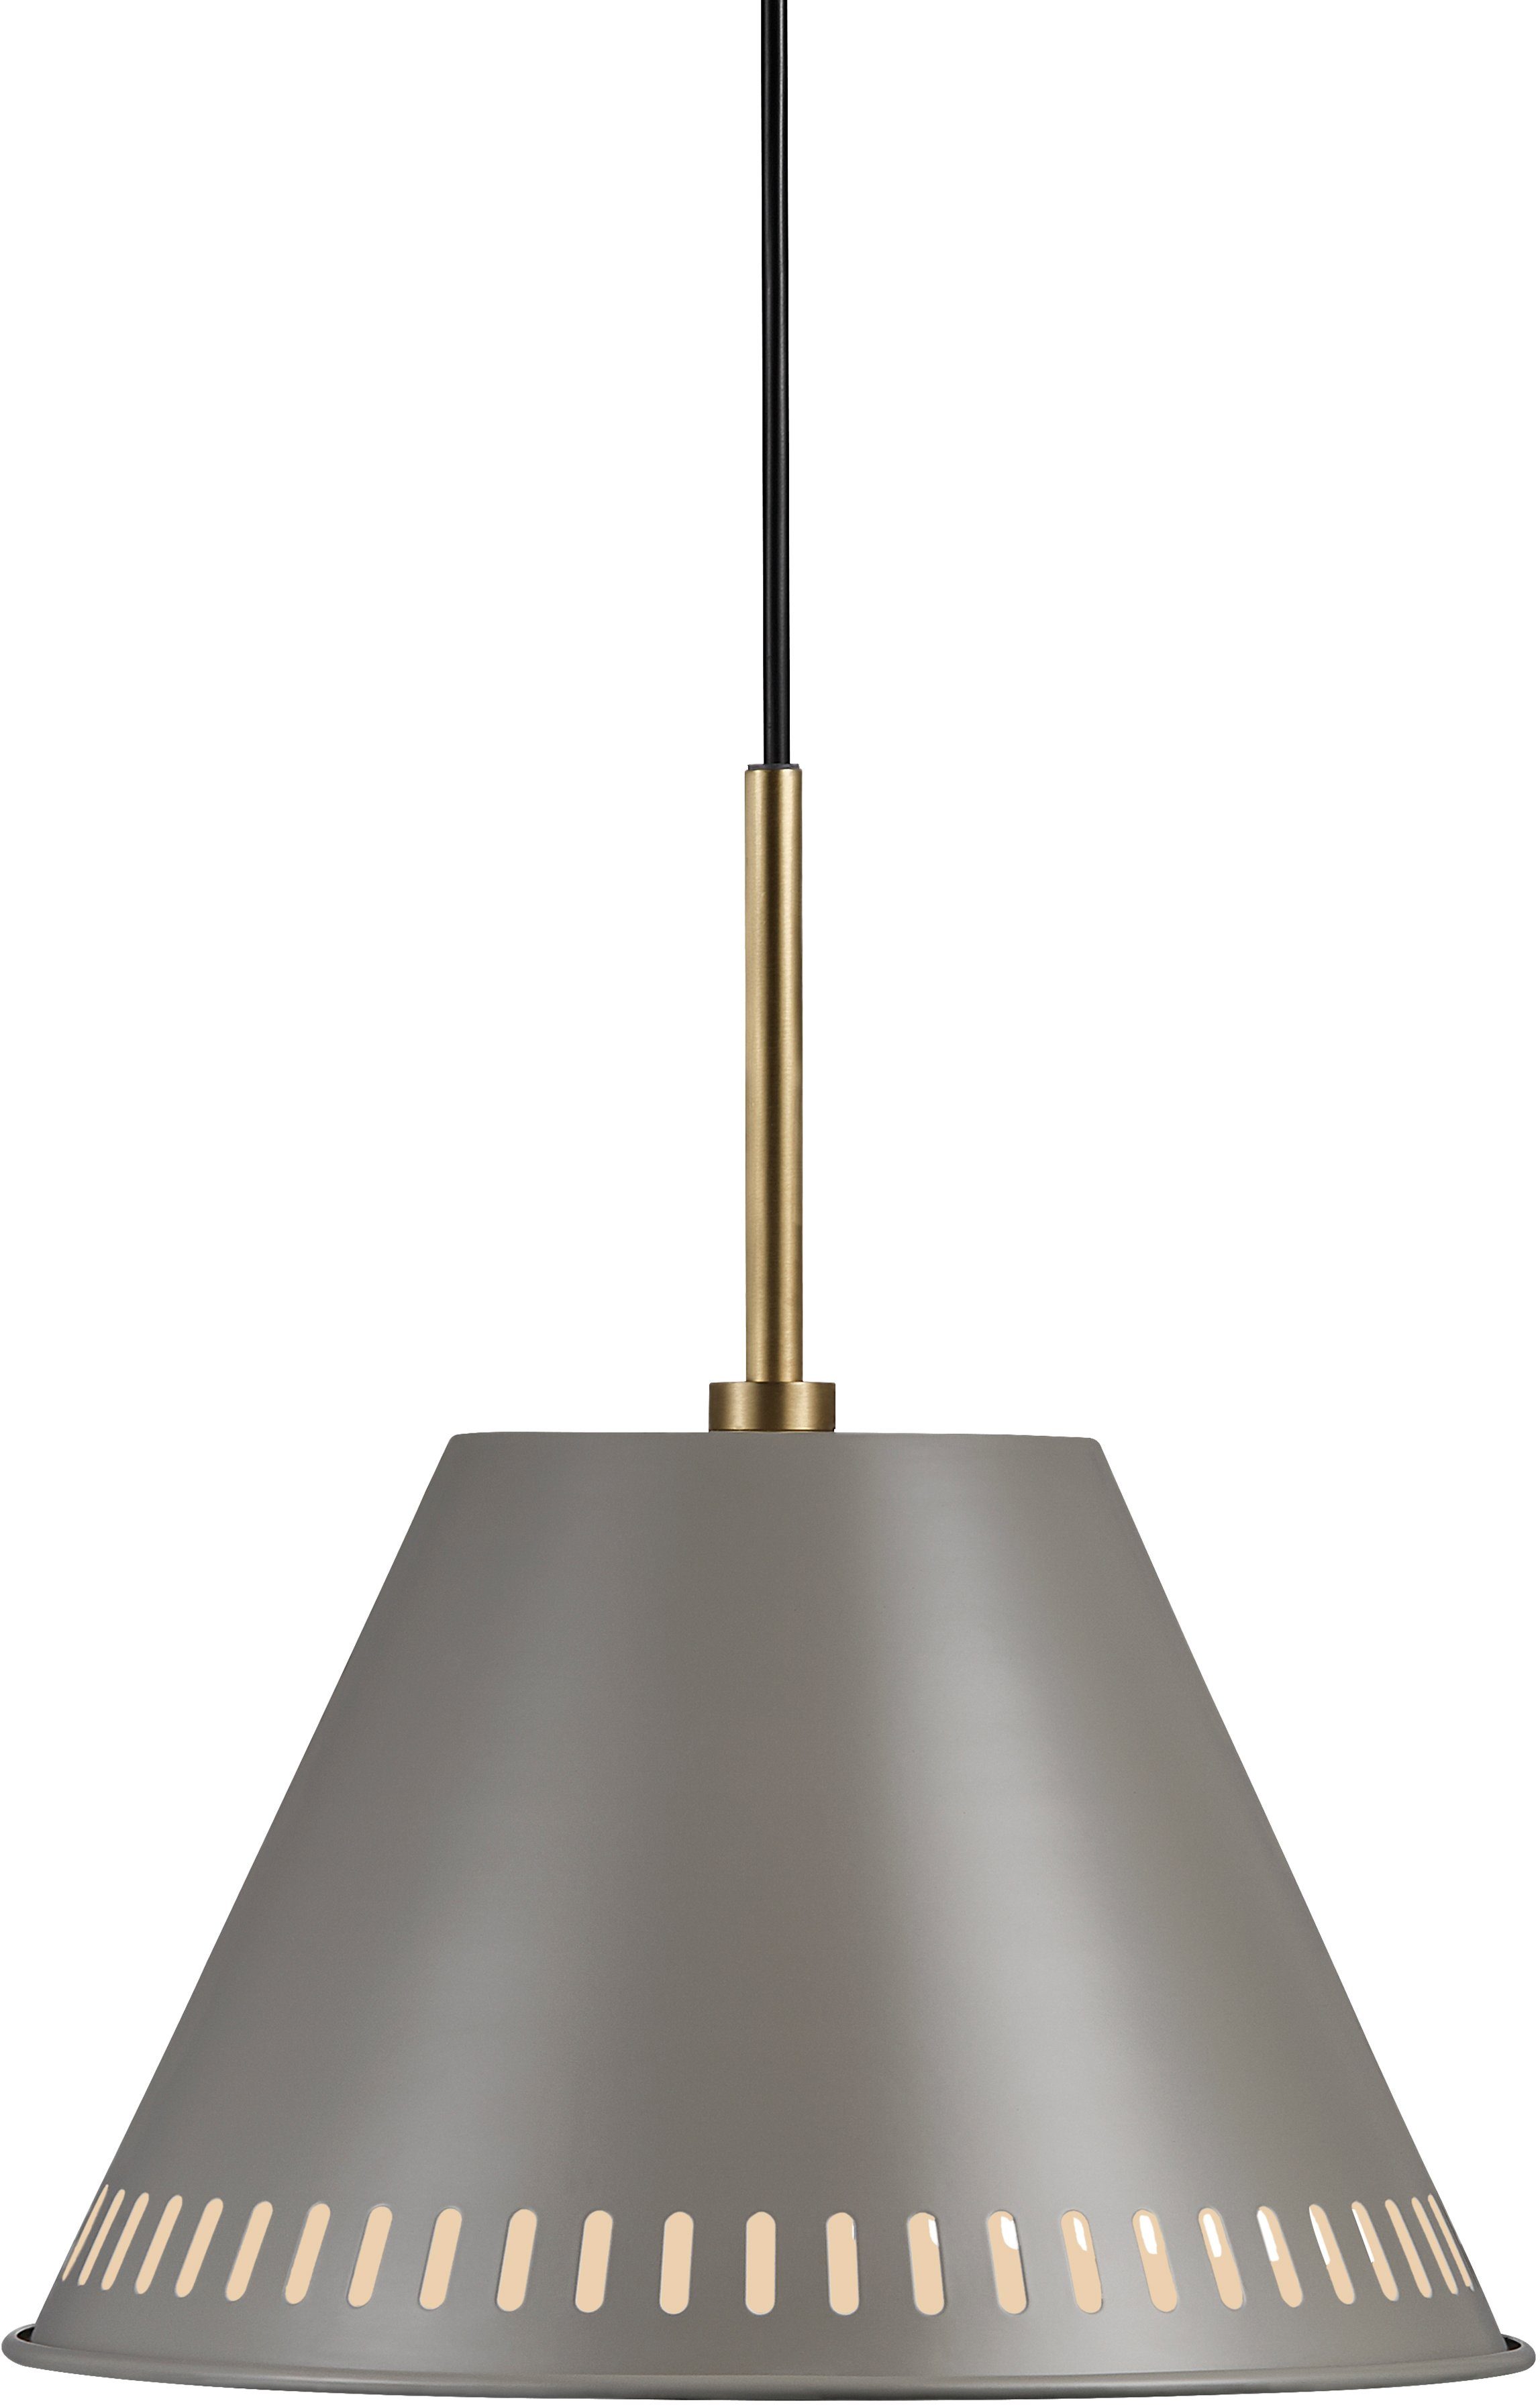 Nordlux Hanglamp Pijnboom Hanglamp, retro Industrial design, messing applicaties